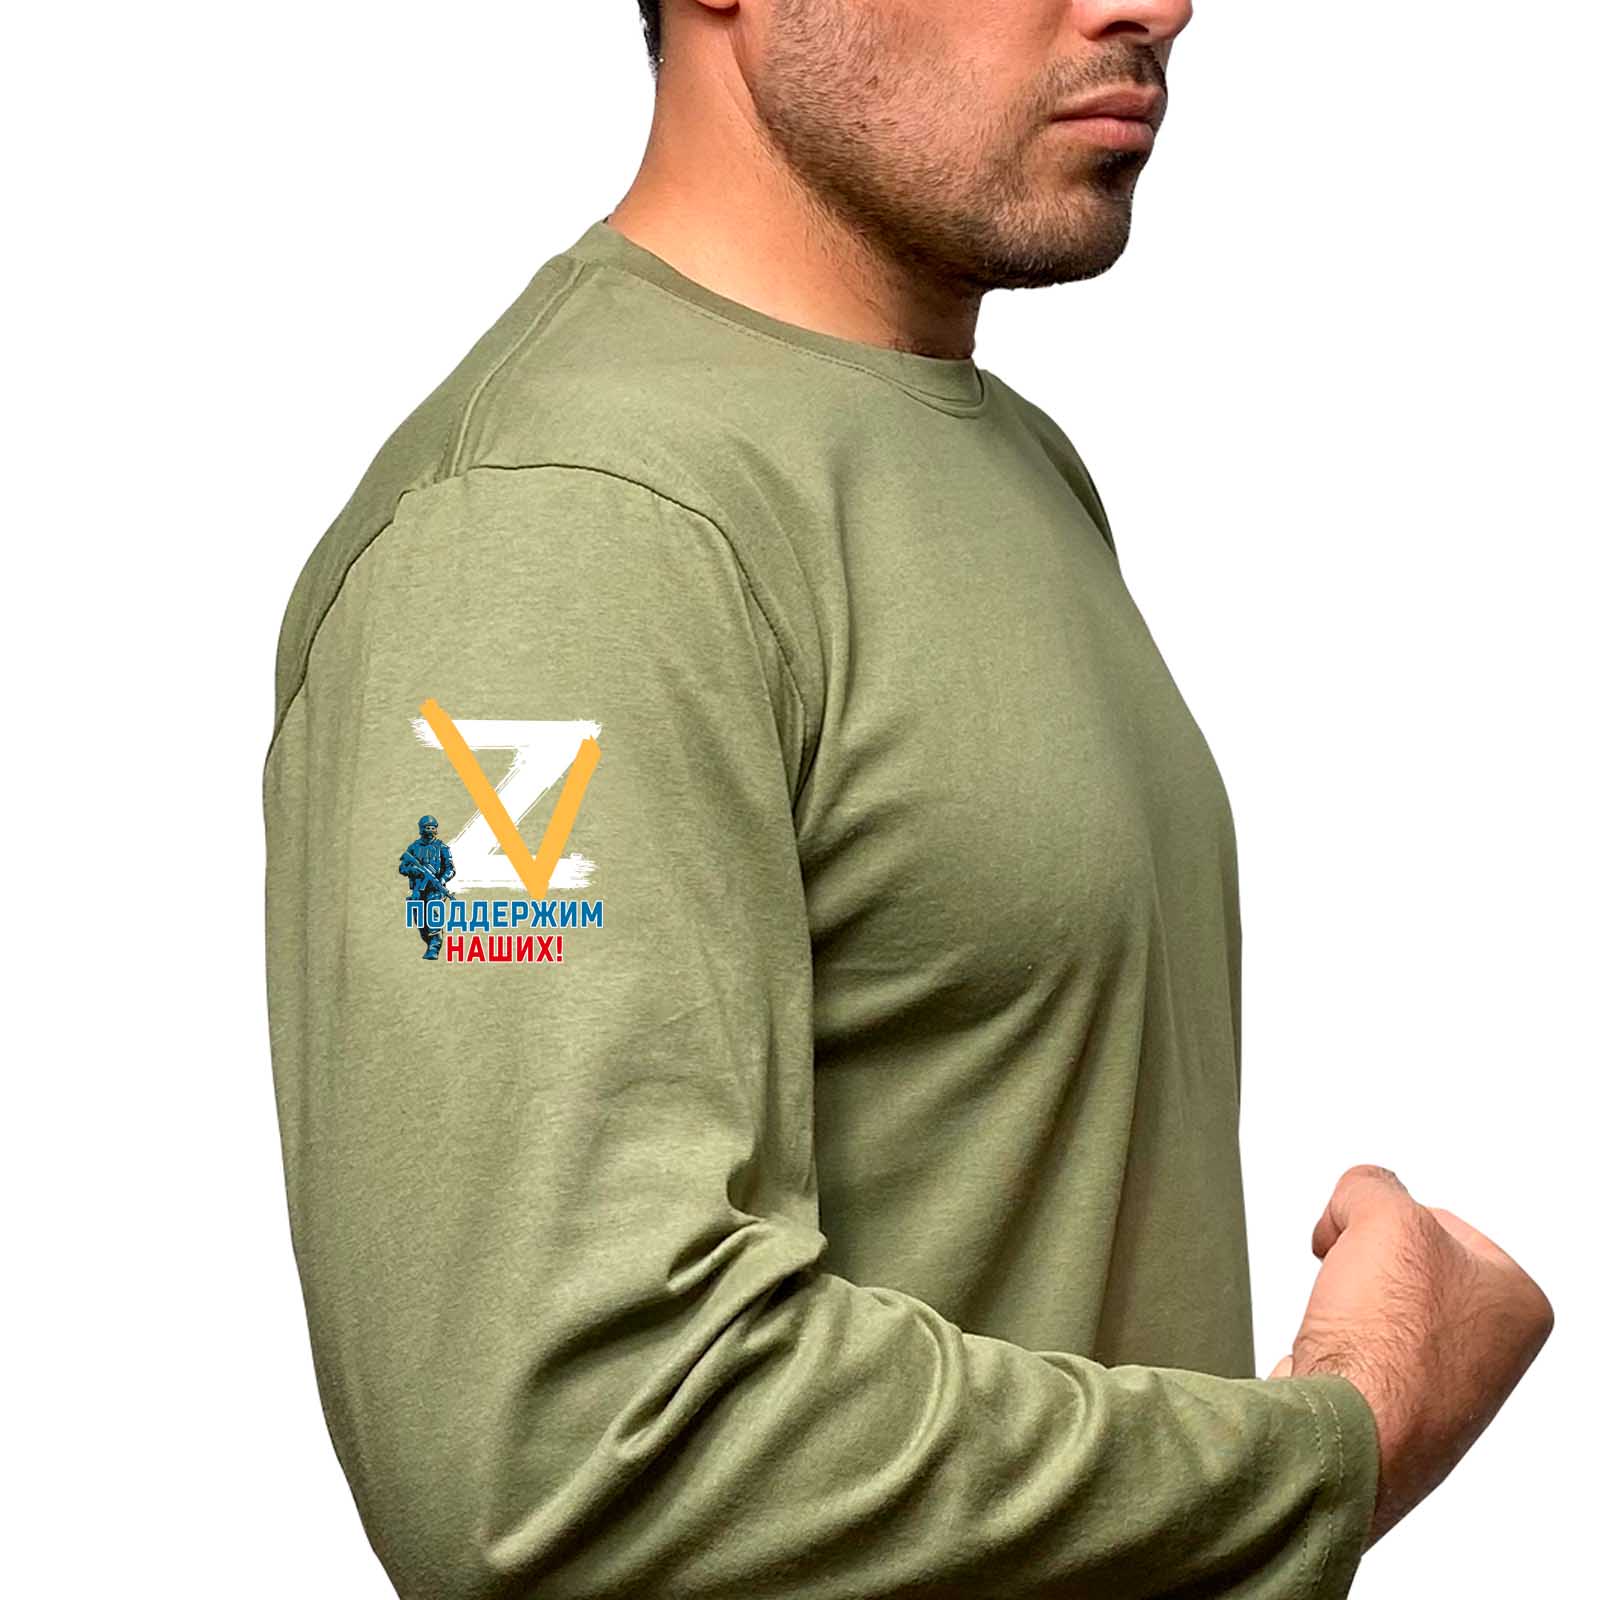 Купить удобную футболку с длинным рукавом Z V онлайн